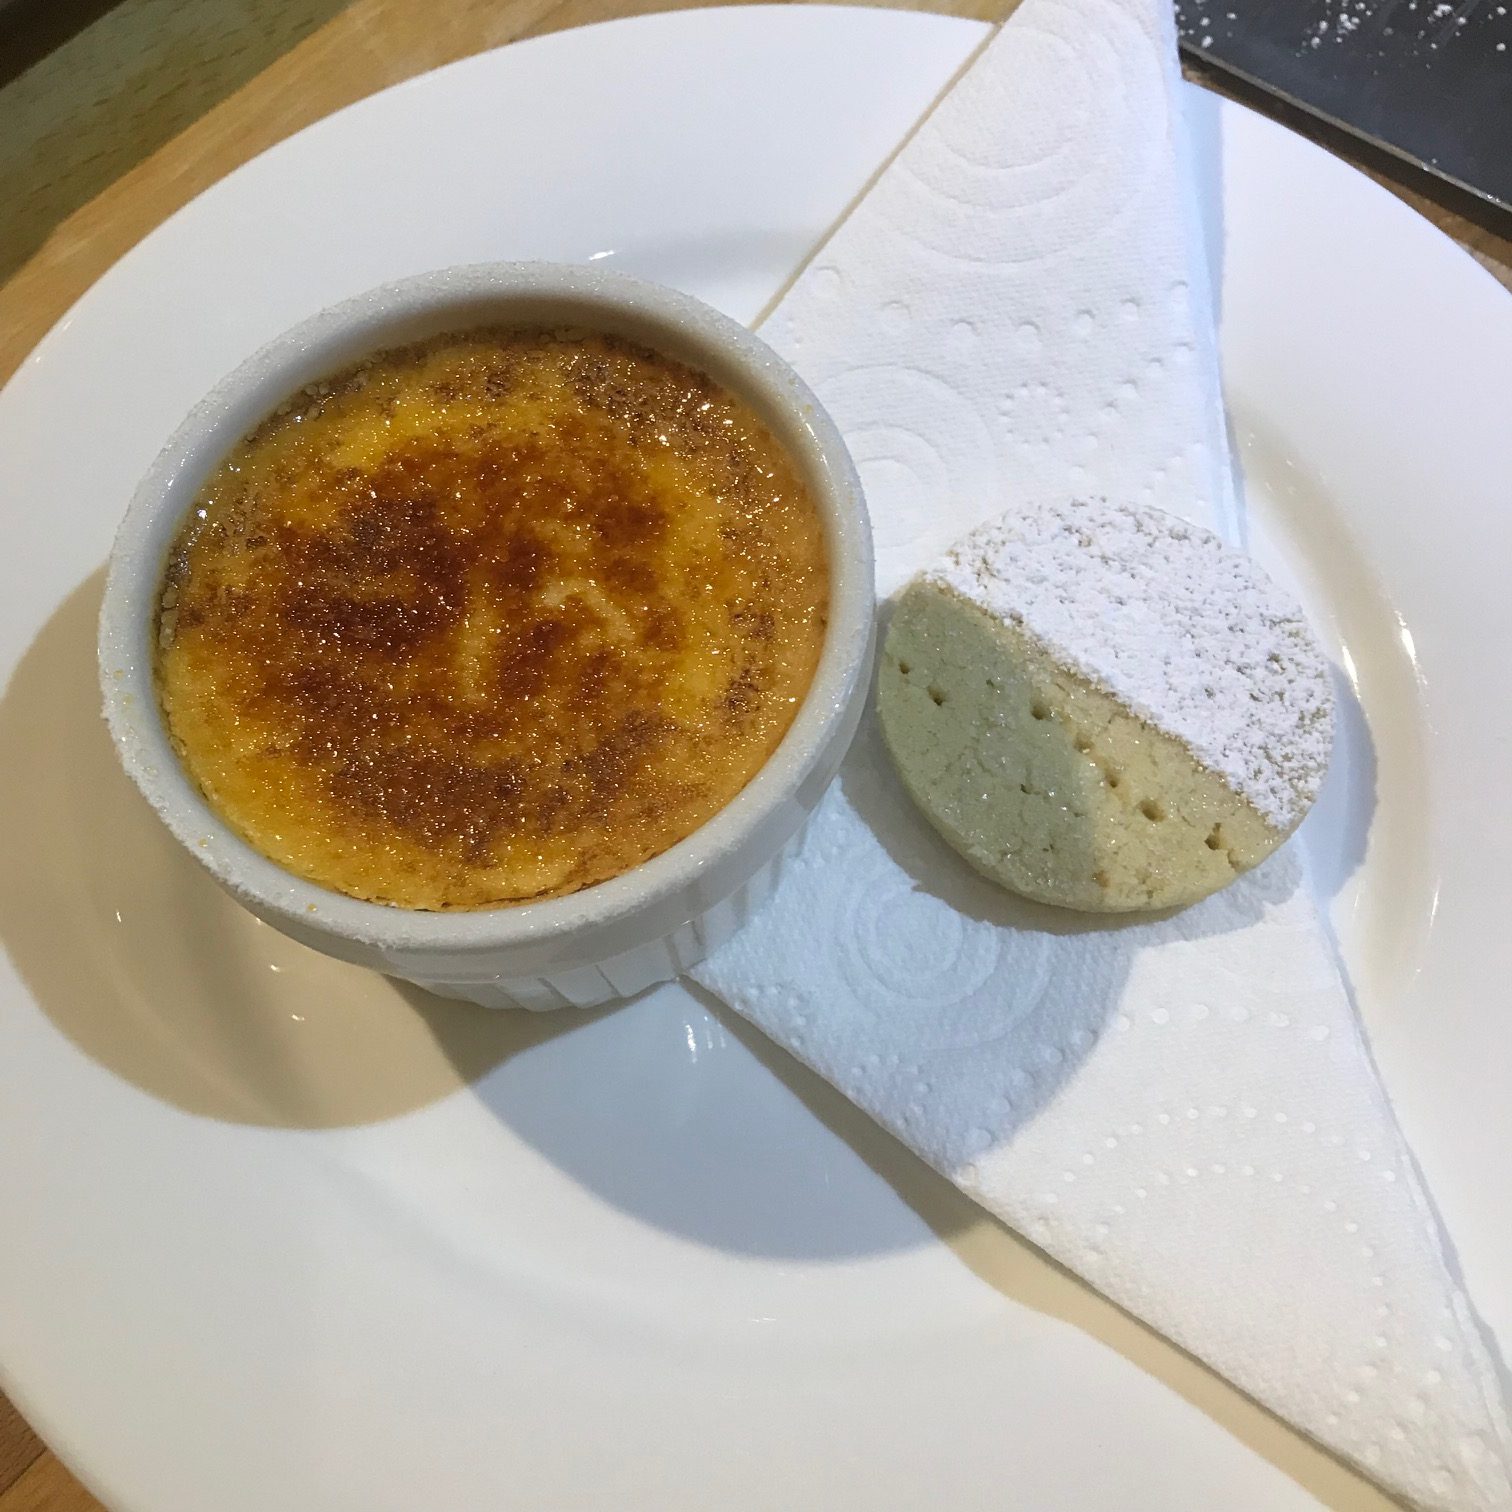 20190923 - Crème Brûlée with Shortbread Biscuits